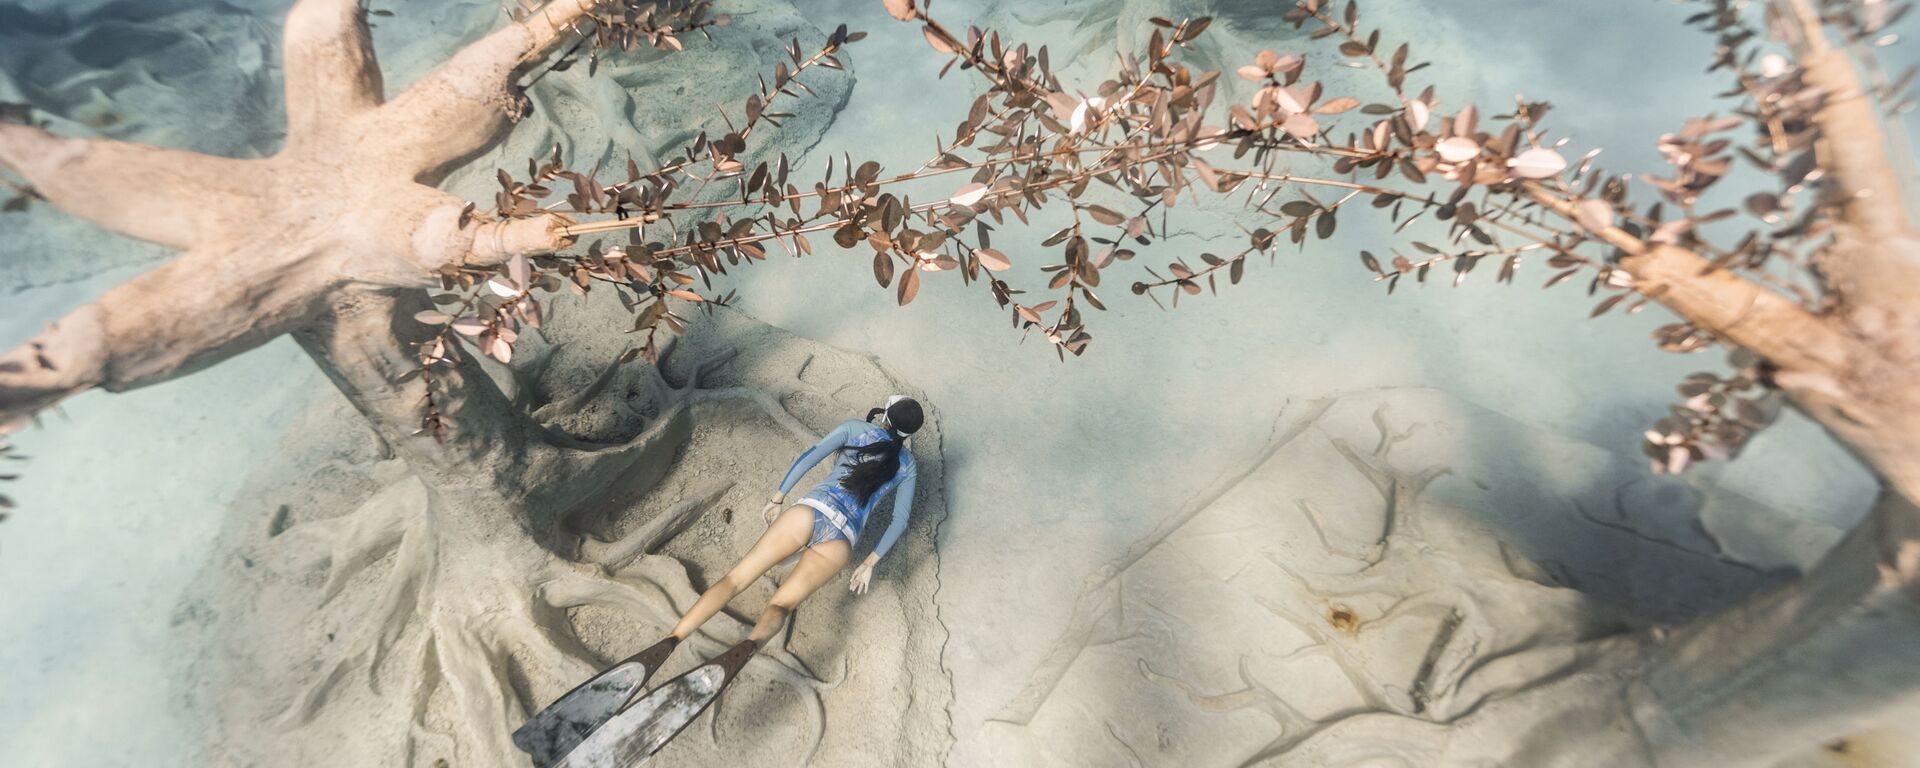 Дайвер в музее подводной скульптуры Musan у пляжа Пернера в Айя-Напе, Кипр - Sputnik Грузия, 1920, 20.08.2021